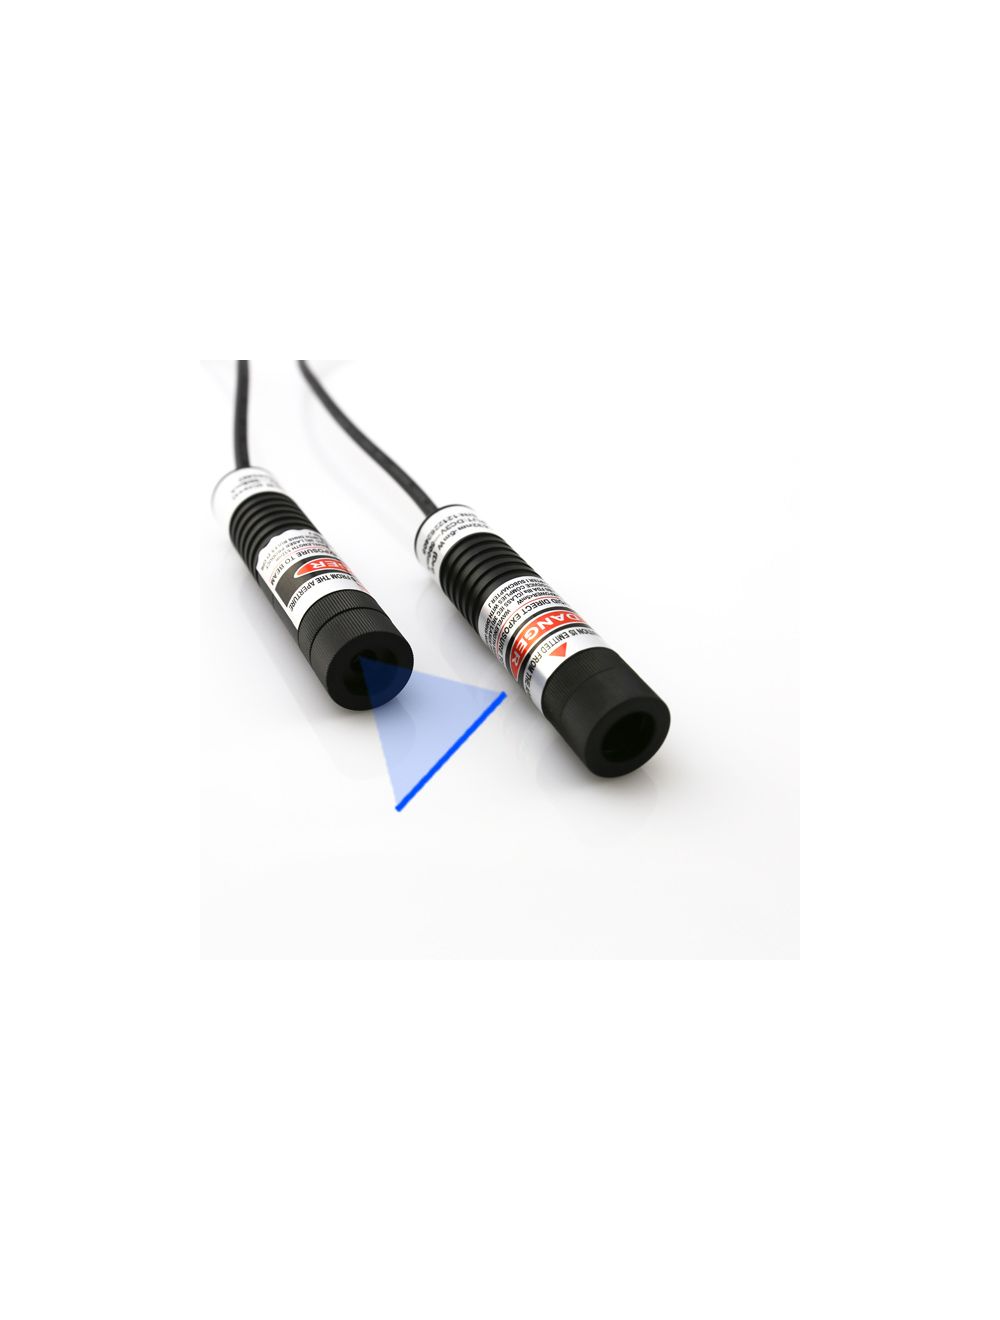 Uniform and Focusable 445nm Blue Line Laser Module, Blue Laser Line  Generators